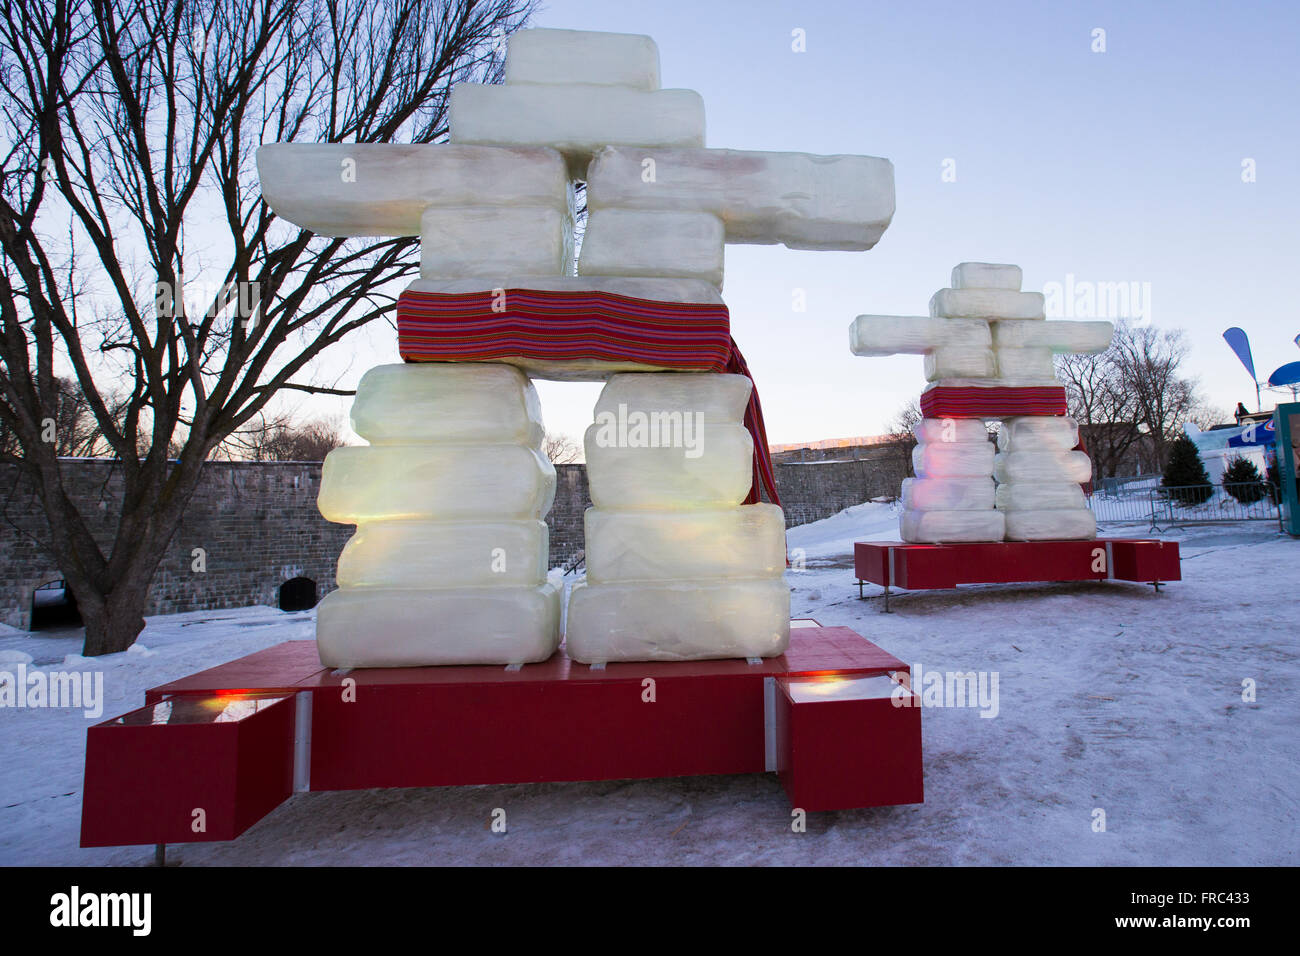 L'inuksuk de glace dans la ville de Québec lors des festivals d'hiver Banque D'Images